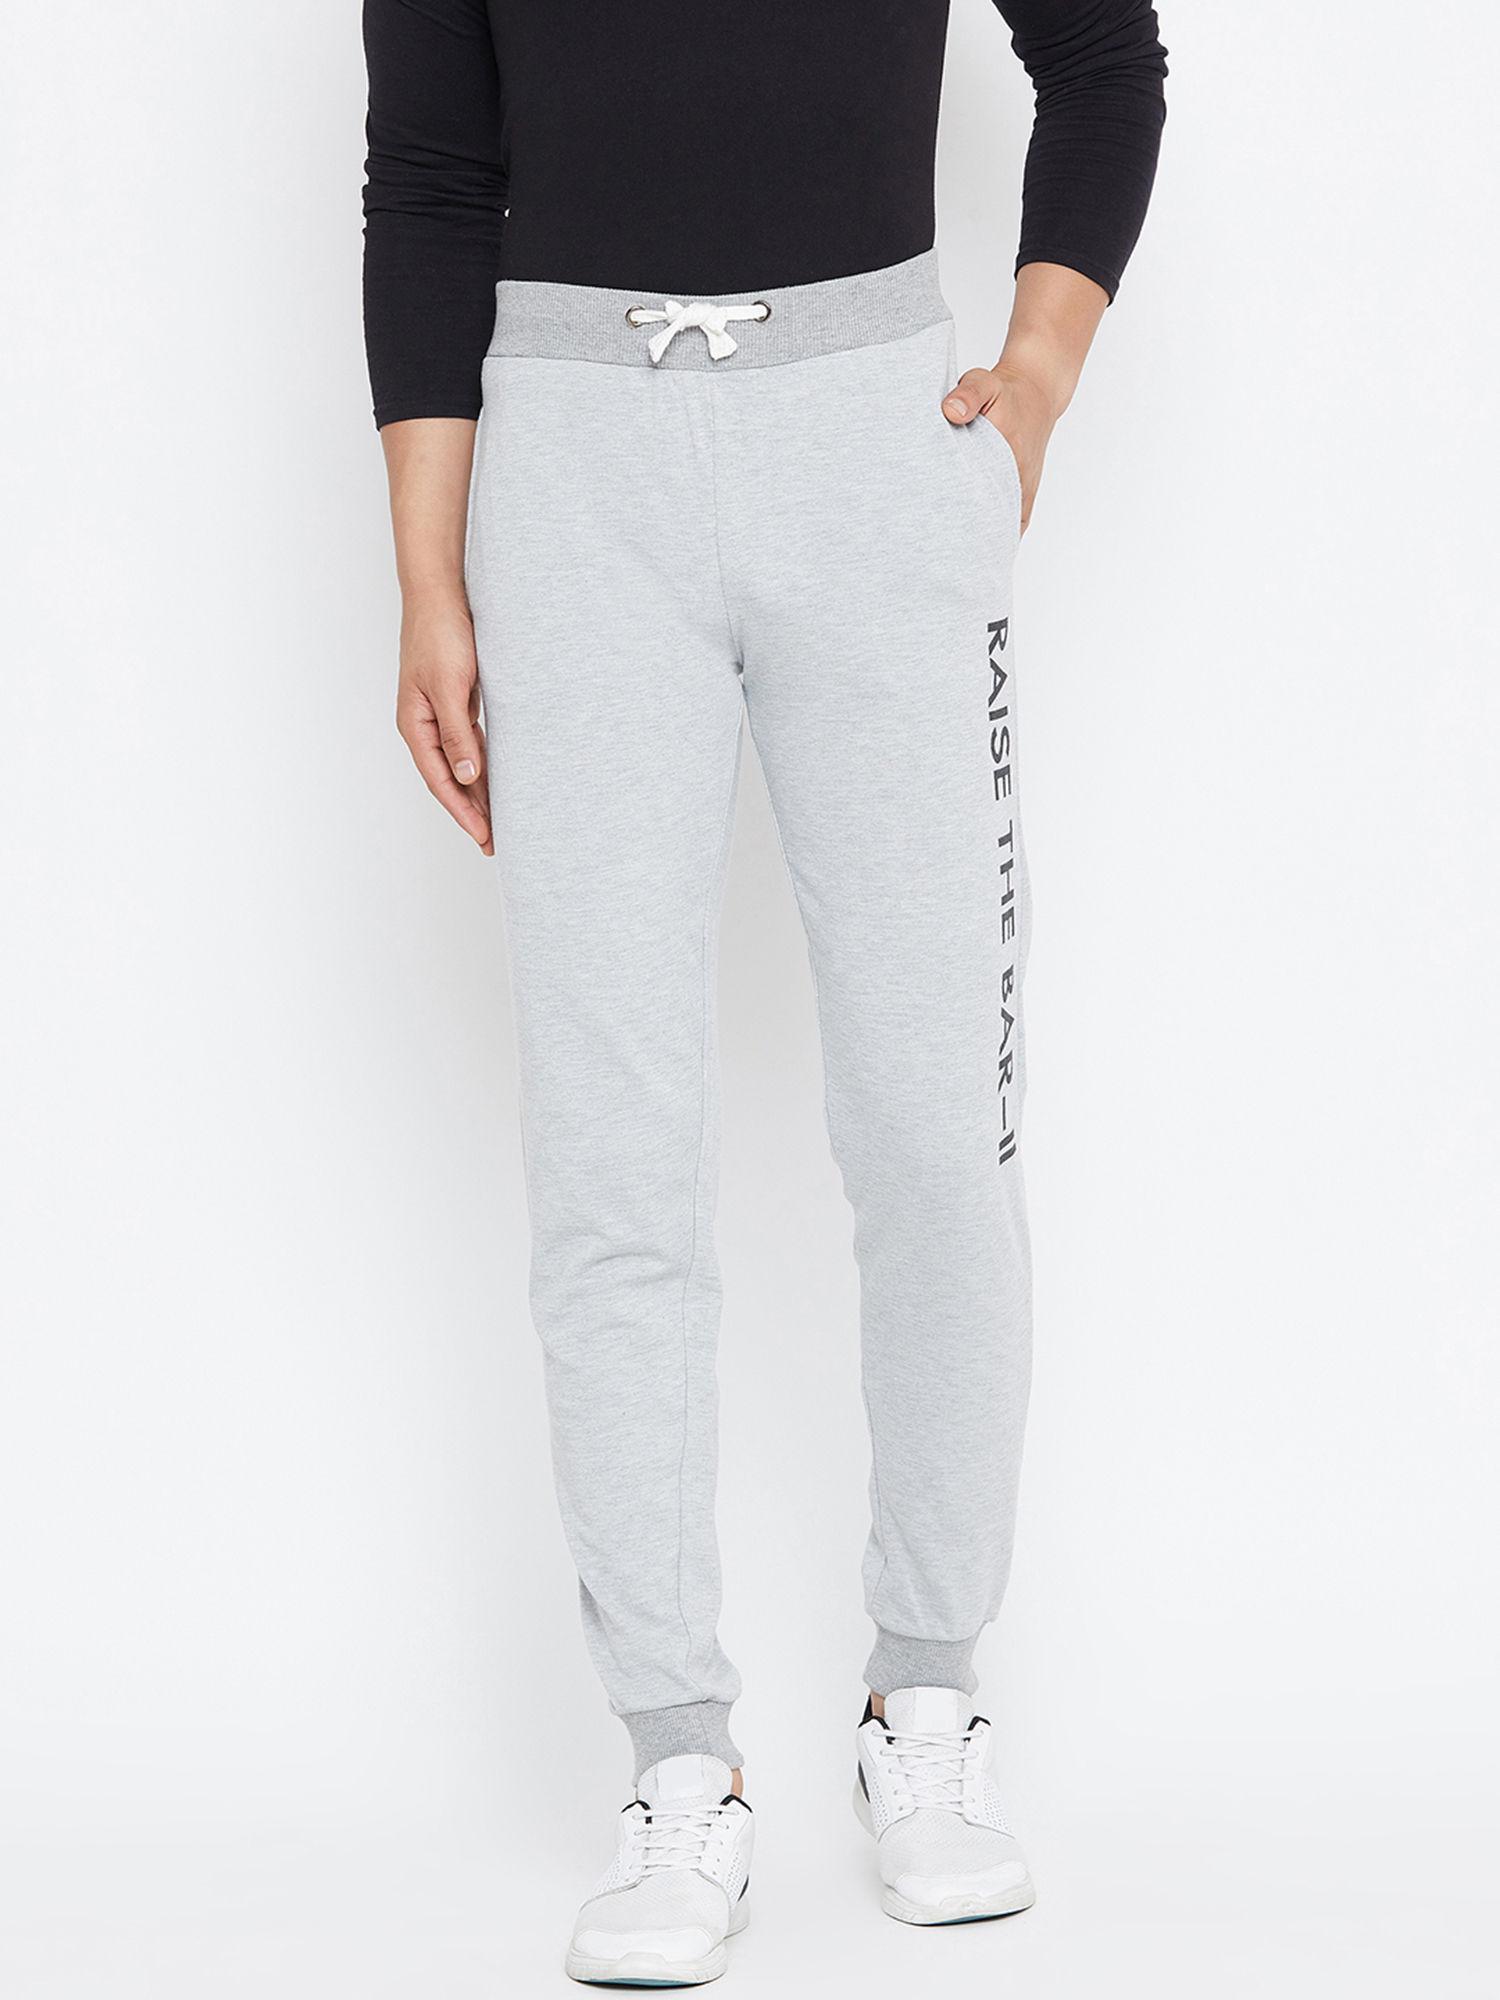 grey printed slim fit track pants